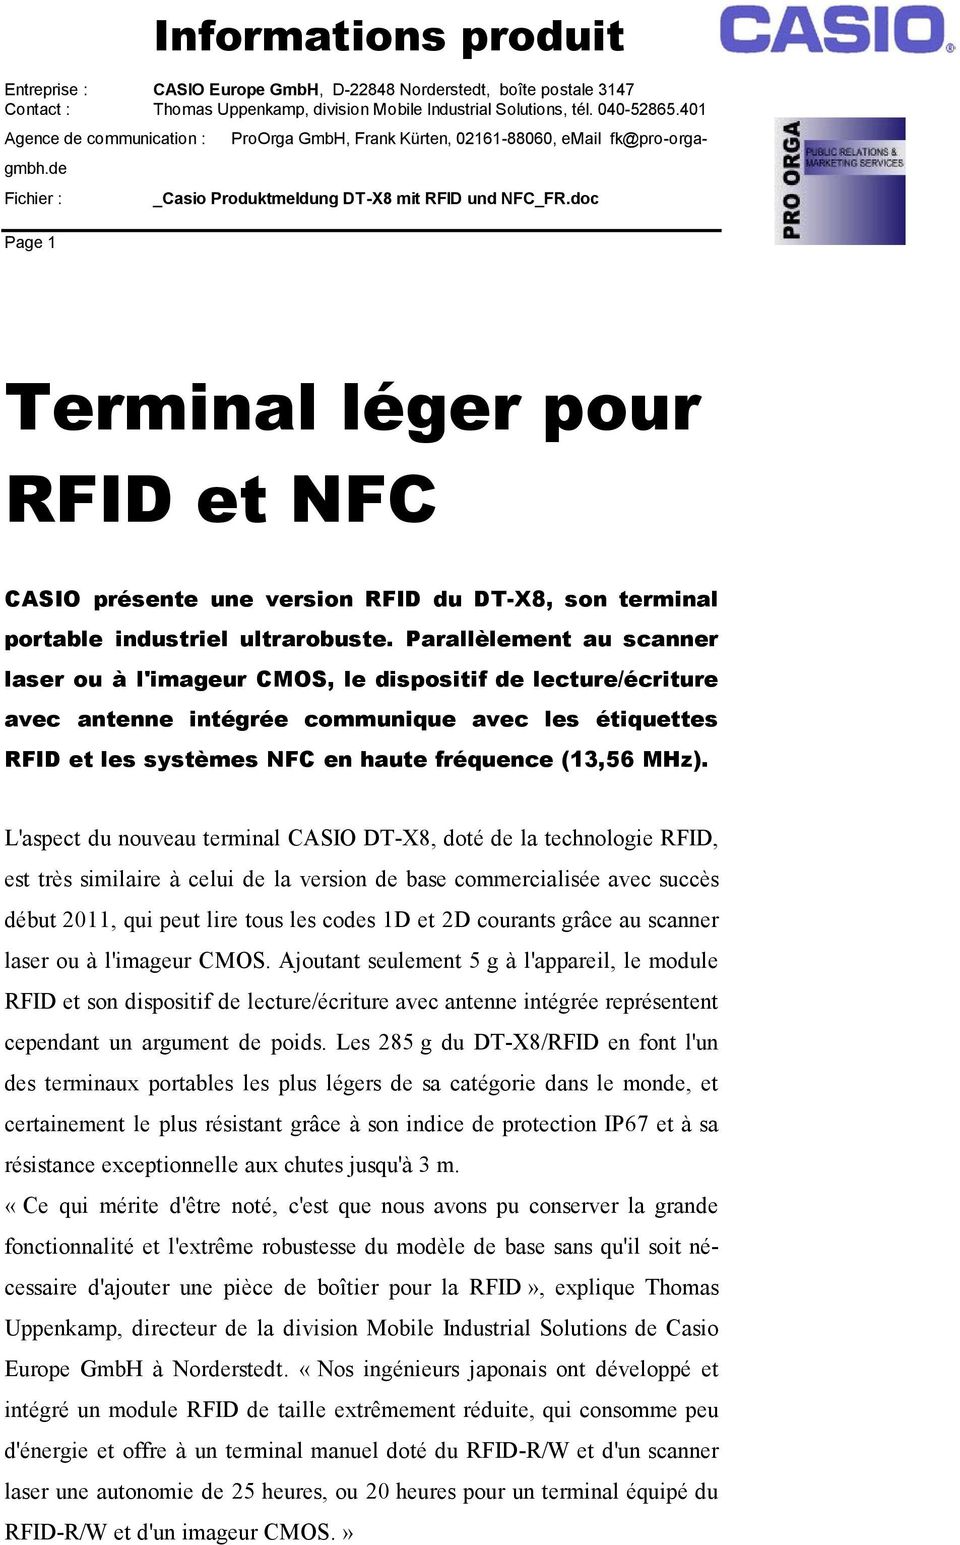 L'aspect du nouveau terminal CASIO DT-X8, doté de la technologie RFID, est très similaire à celui de la version de base commercialisée avec succès début 2011, qui peut lire tous les codes 1D et 2D